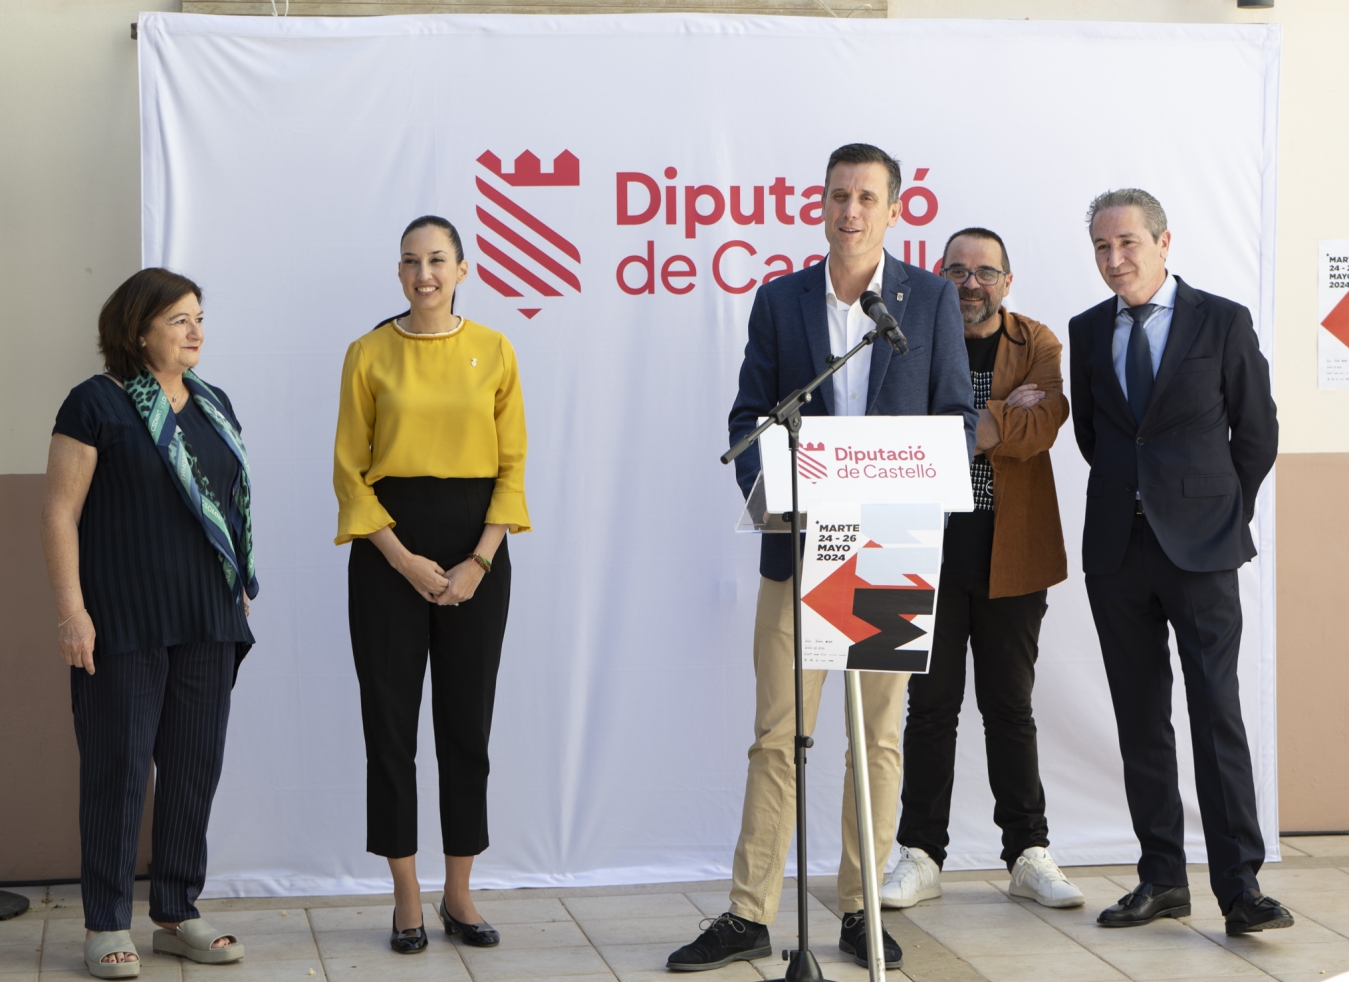 La Diputación de Castellón reafirma su compromiso con la cultura a través de la Feria de Arte Contemporáneo de Castellón MARTE